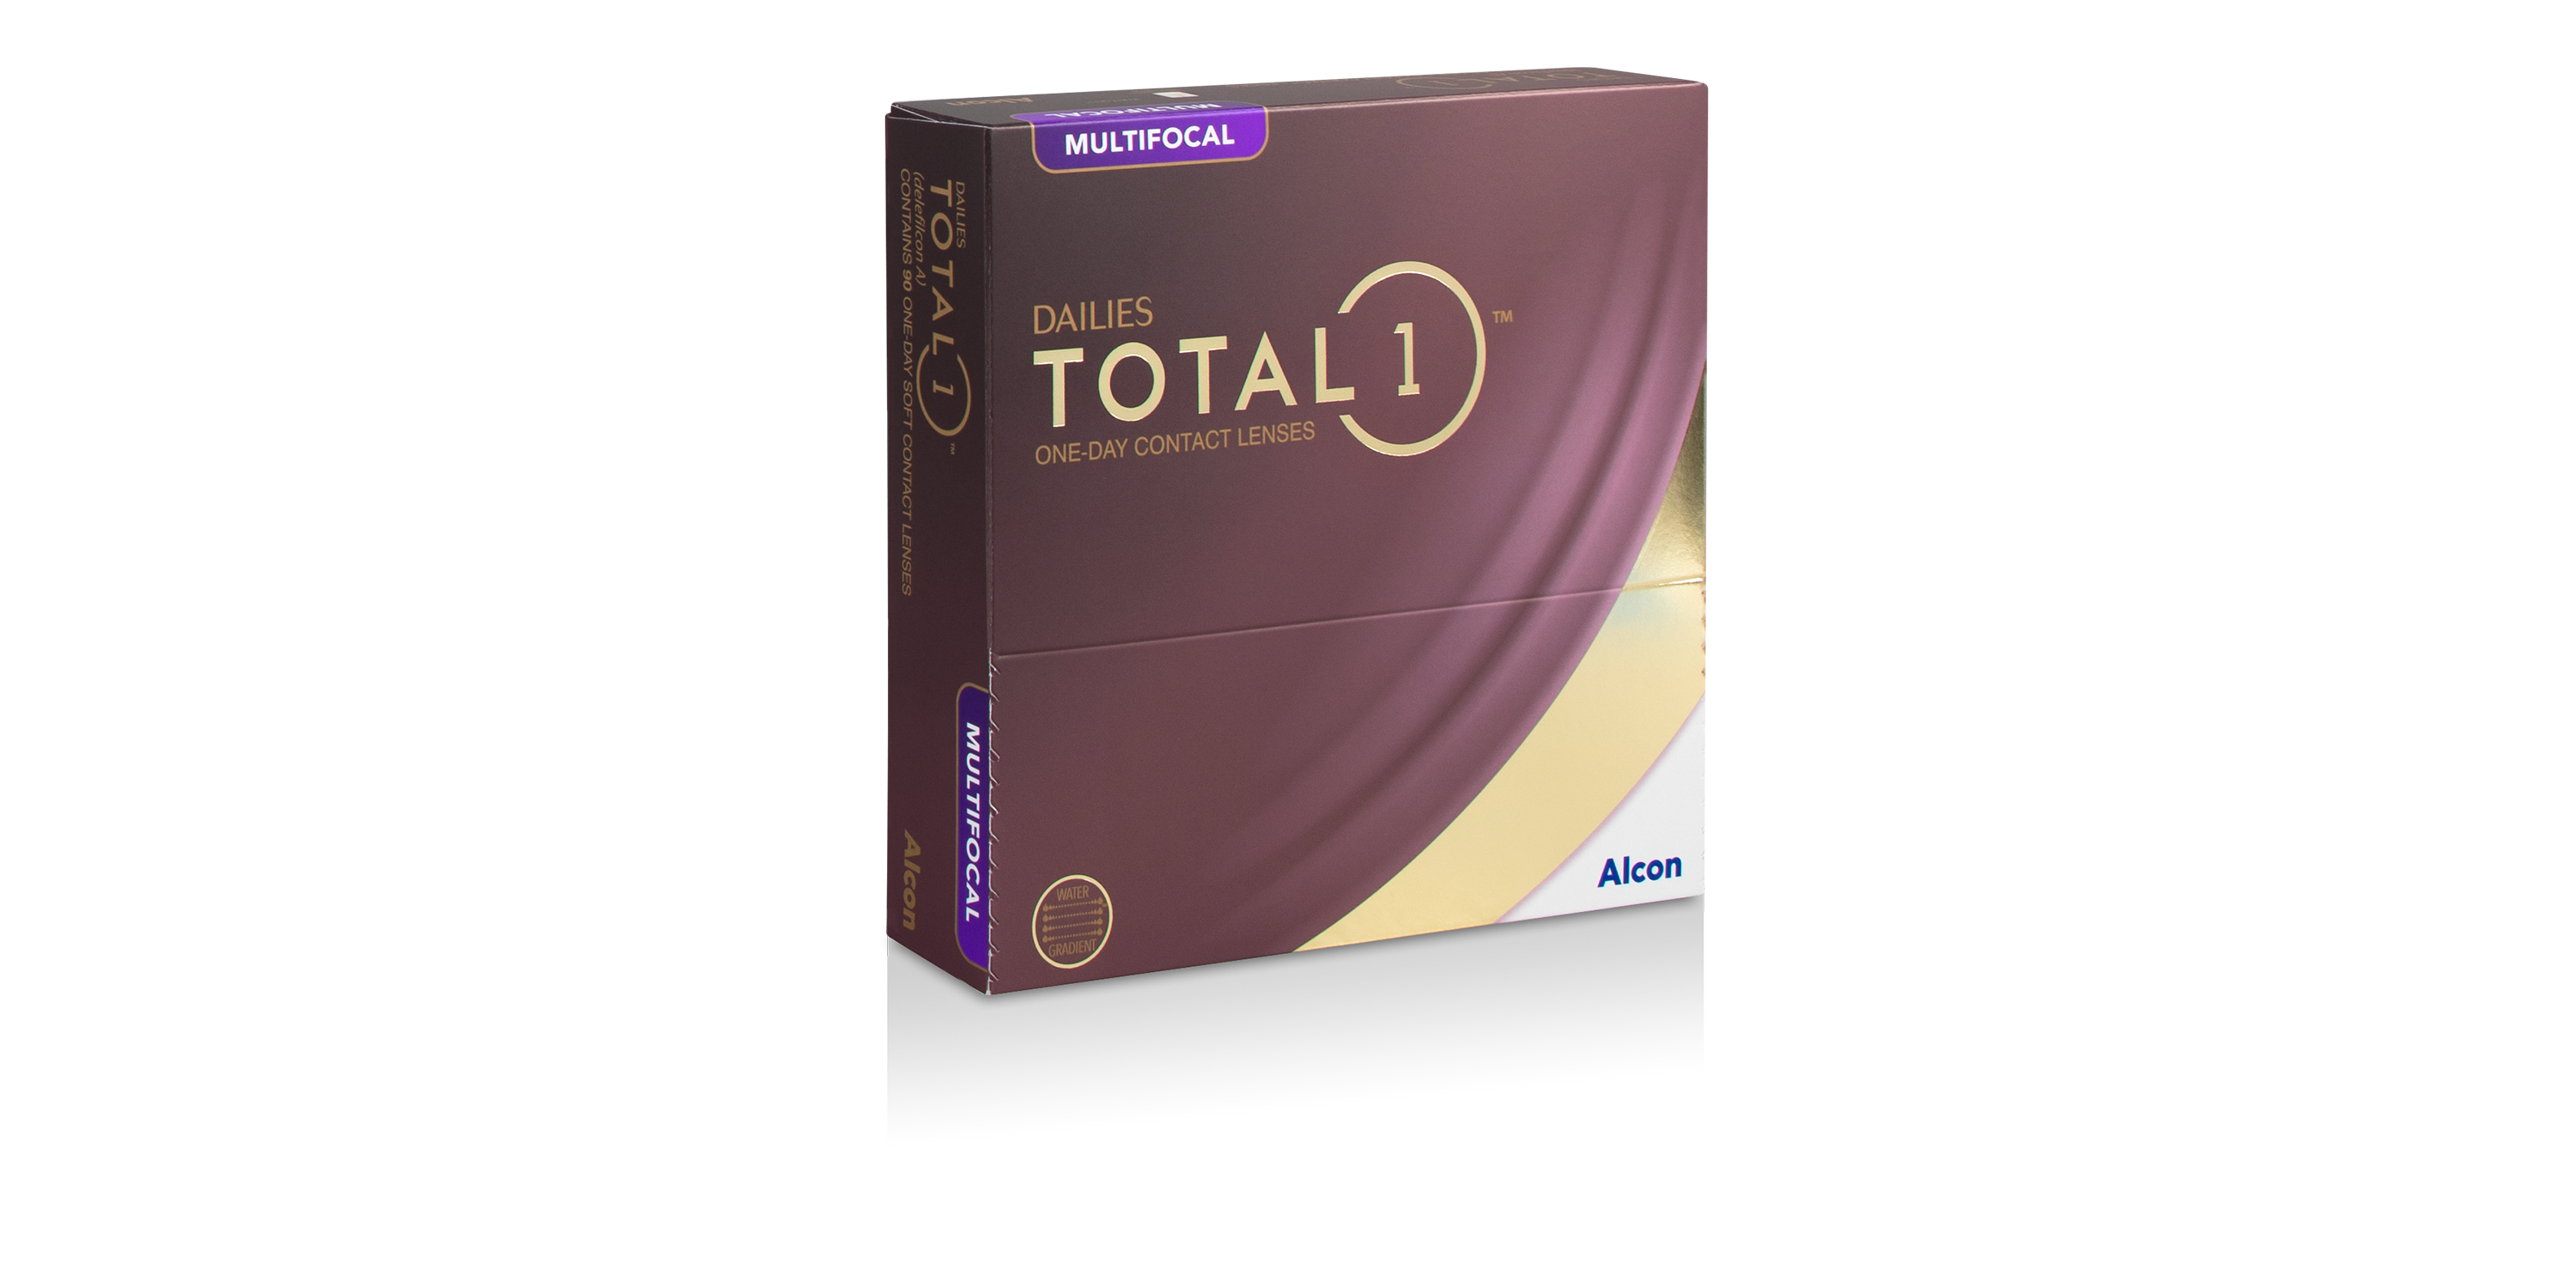 DAILIES TOTAL1® Multifocal, 90 pack